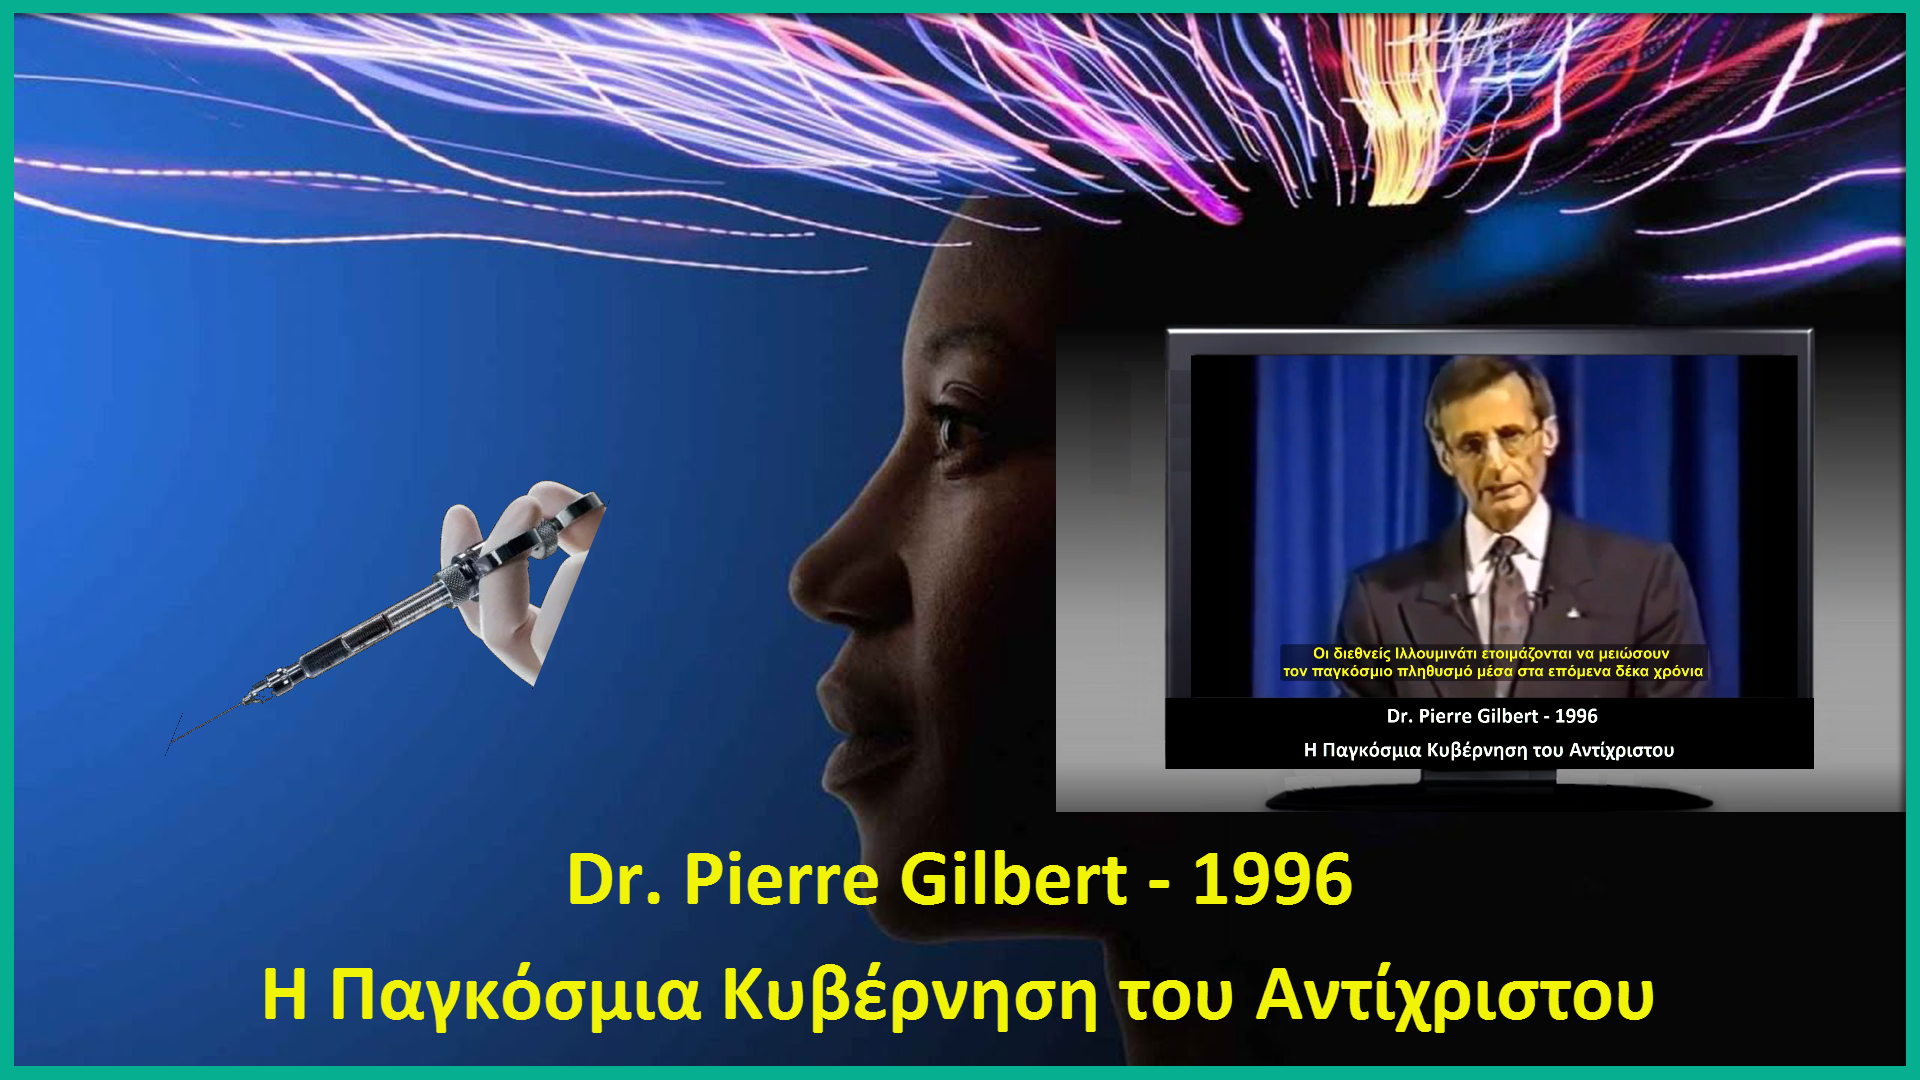 Τα μακάβρια σχέδια των ΣΑΤΑΝΙΣΤΩΝ ΣΙΩΝΙΣΤΩΝ. Dr. Pierre Gilbert – 1996 – H Παγκόσμια Κυβέρνηση του Αντίχριστου. Το ΣΟΚαριστικό βίντεο που πρέπει να δουν ΟΛΟΙ